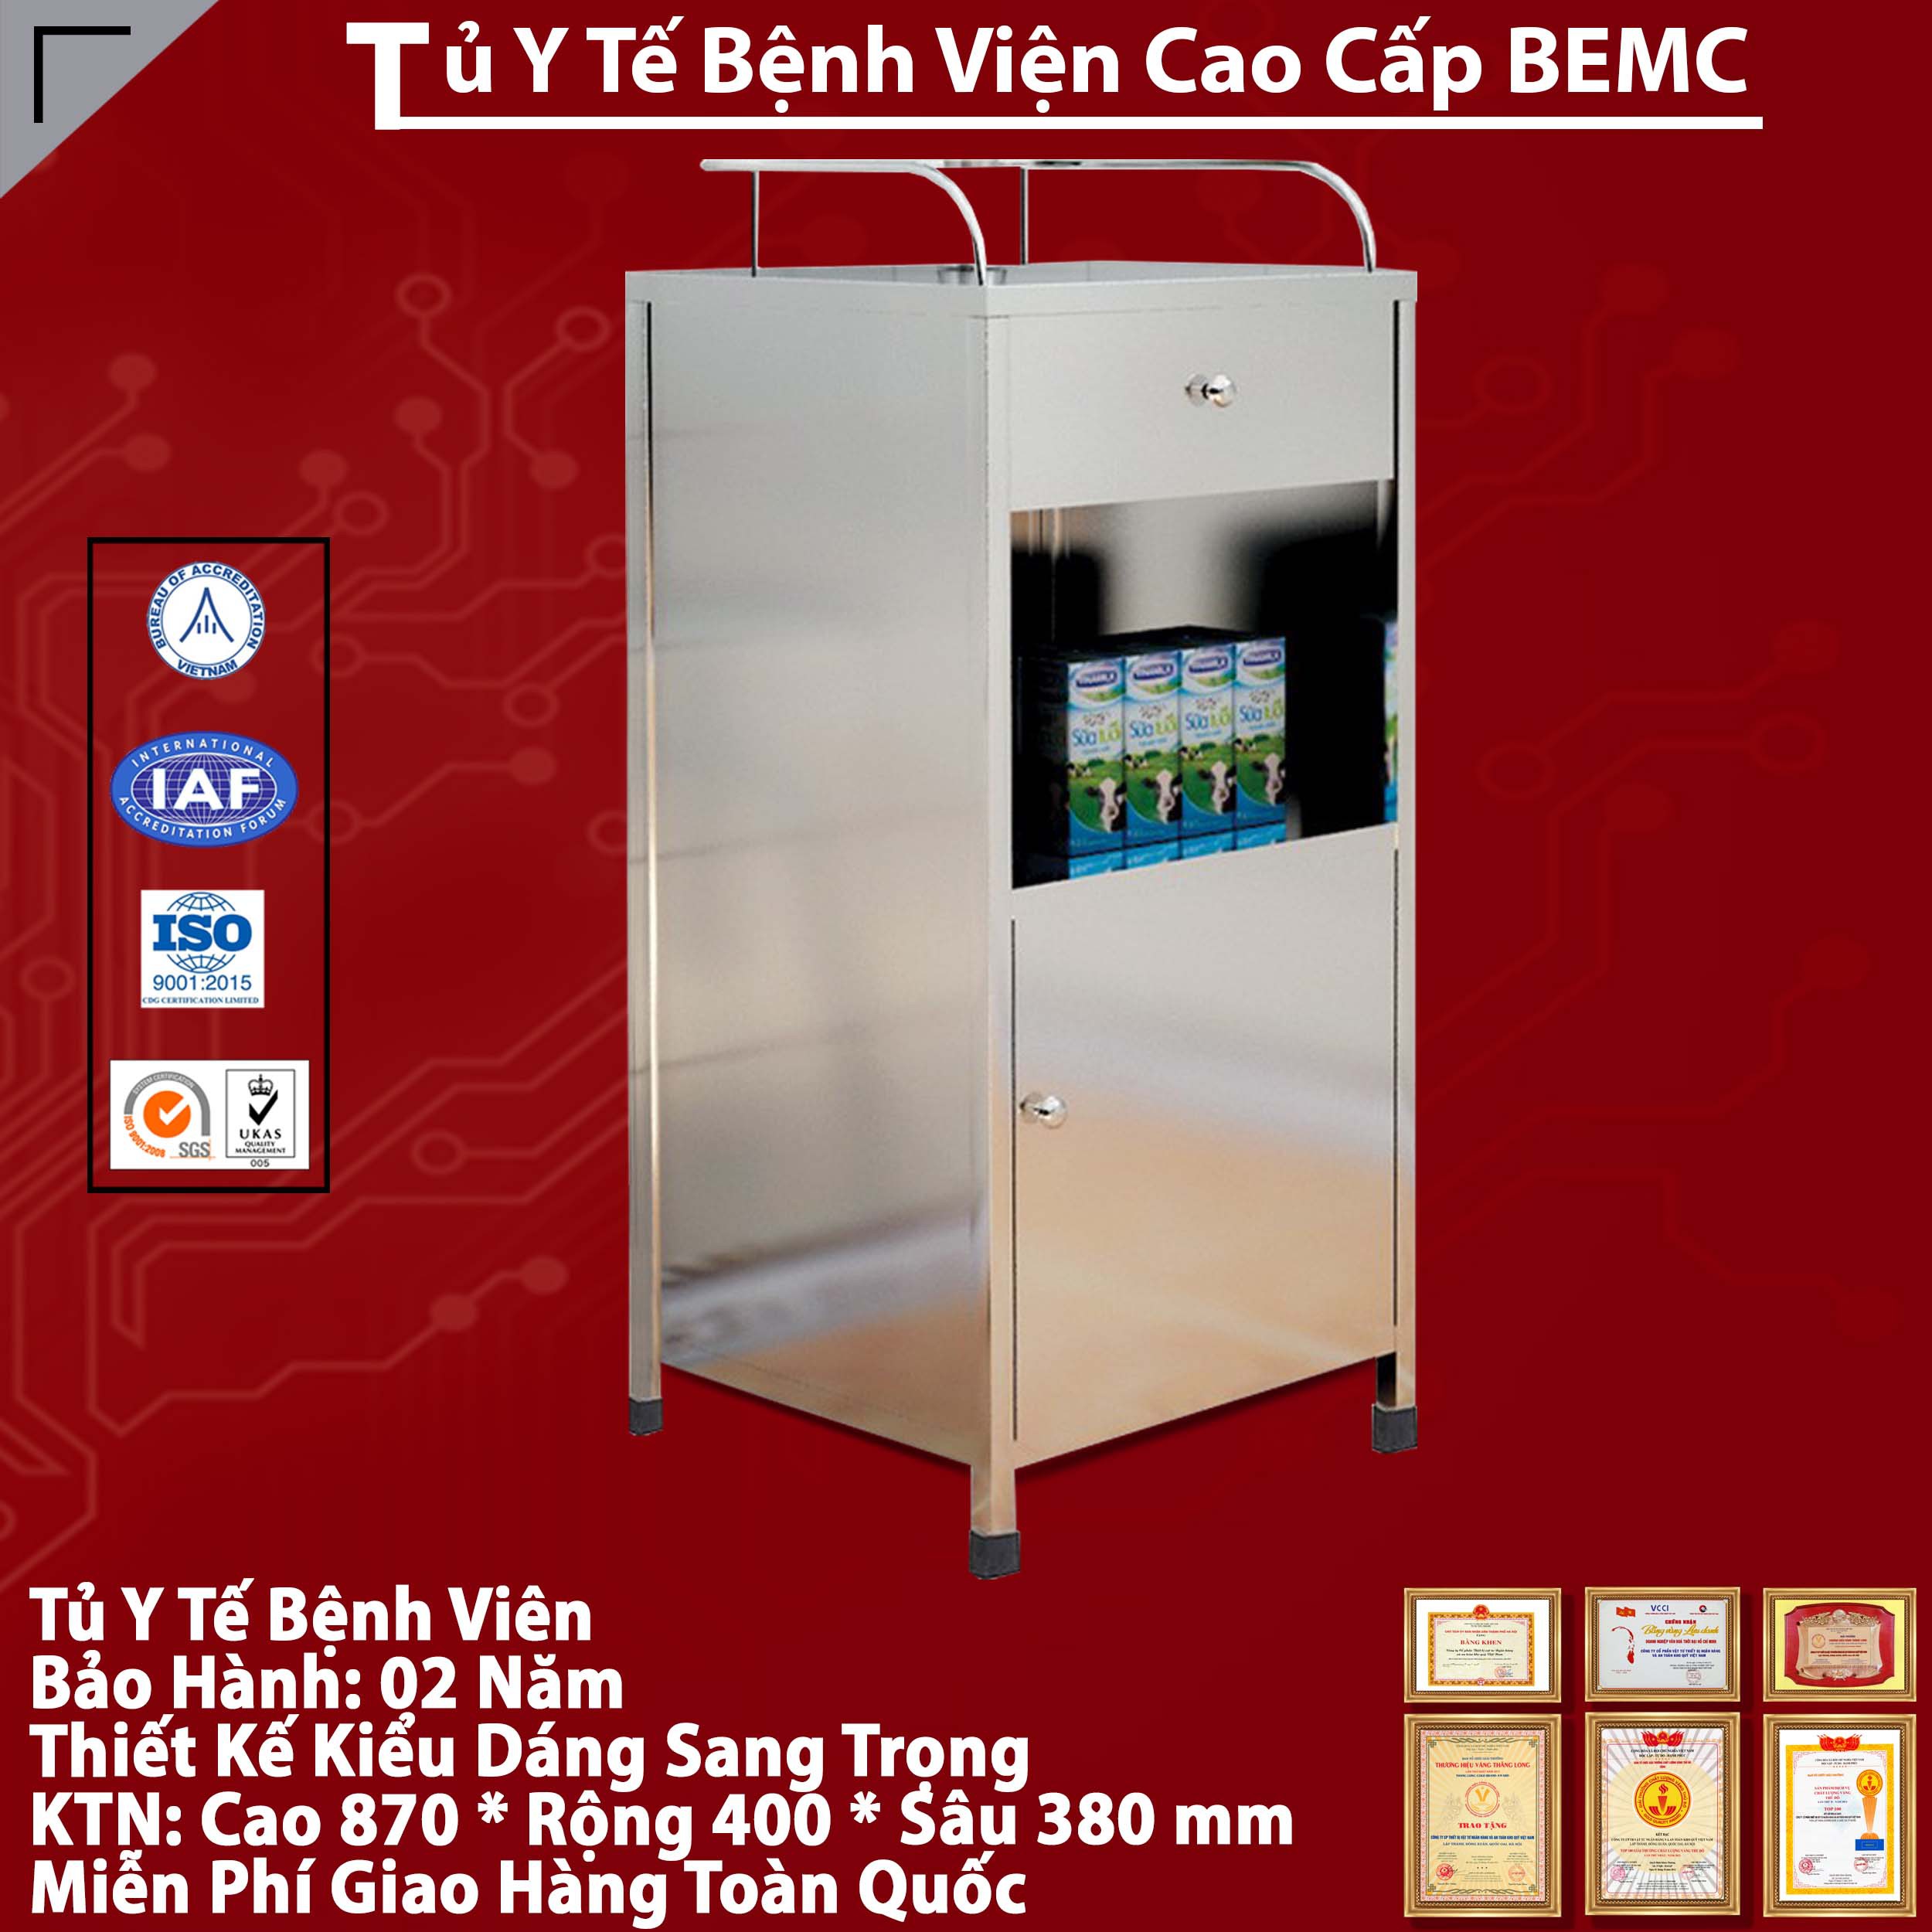 Tủ y tế cá nhân BEMC - TYT01 cao cấp,chính hãng